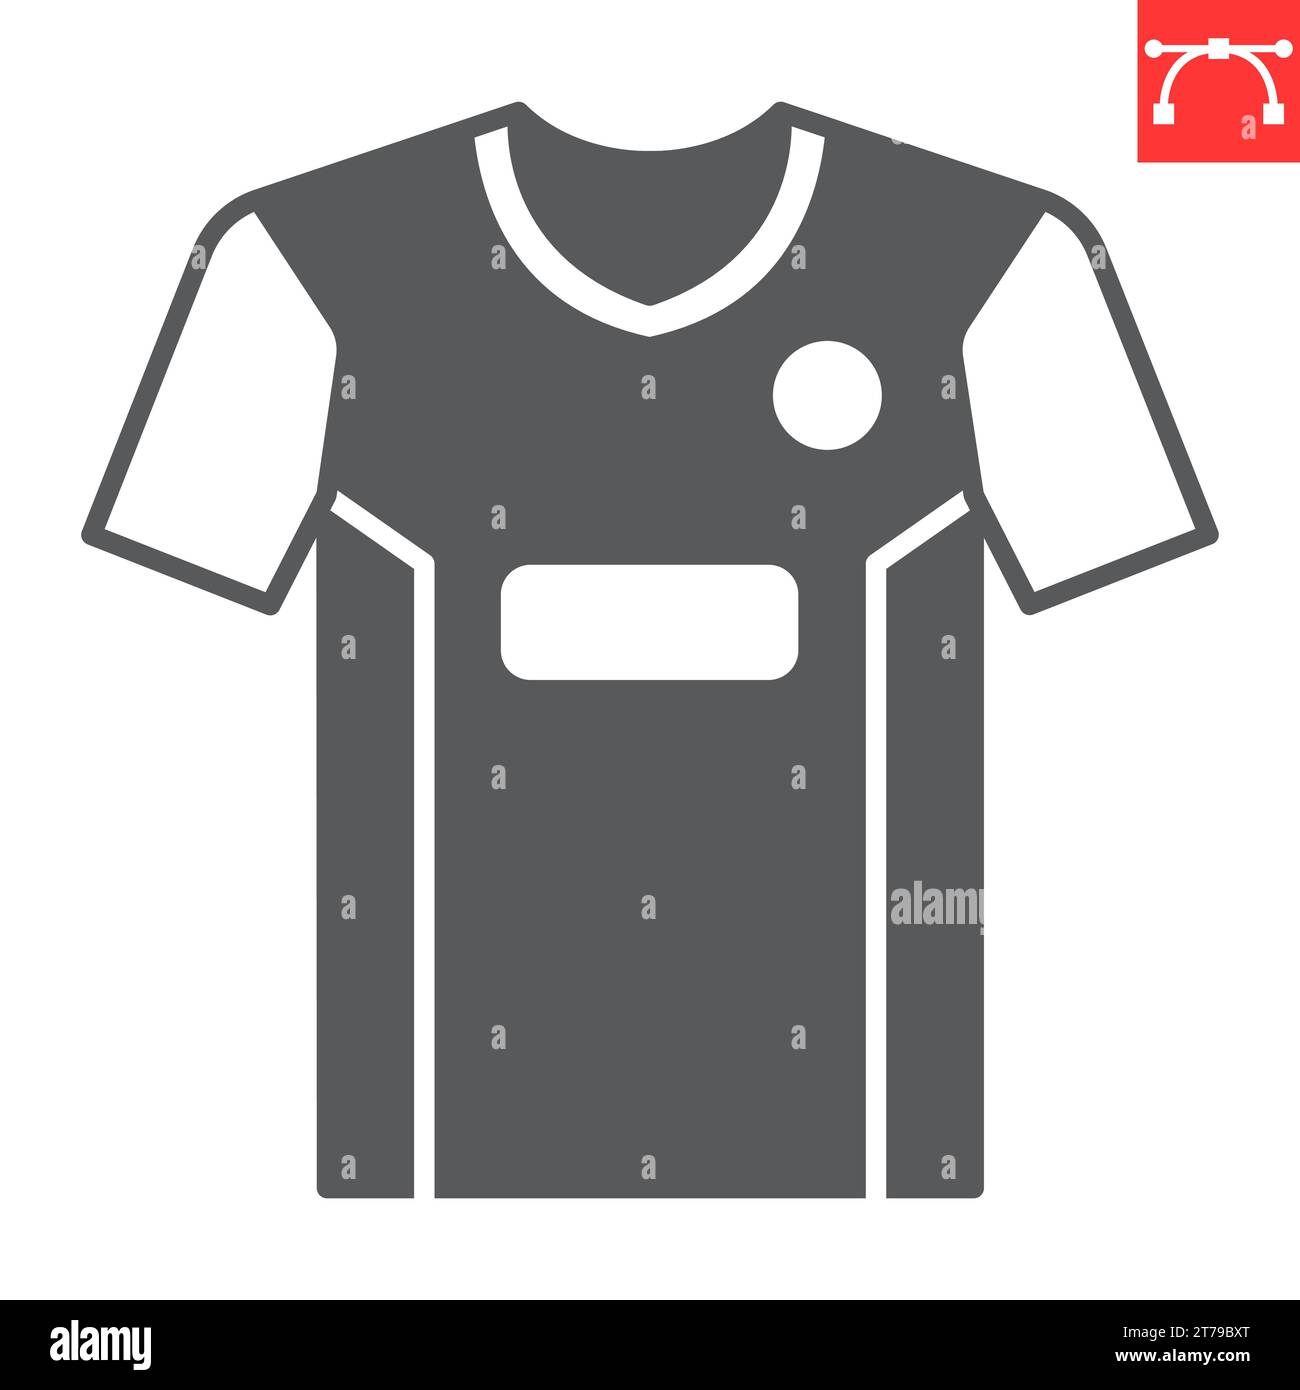 Camiseta azul y negro plantilla de fútbol o fútbol para el club del equipo  sobre fondo blanco. deporte de jersey, ilustración vectorial eps 10.